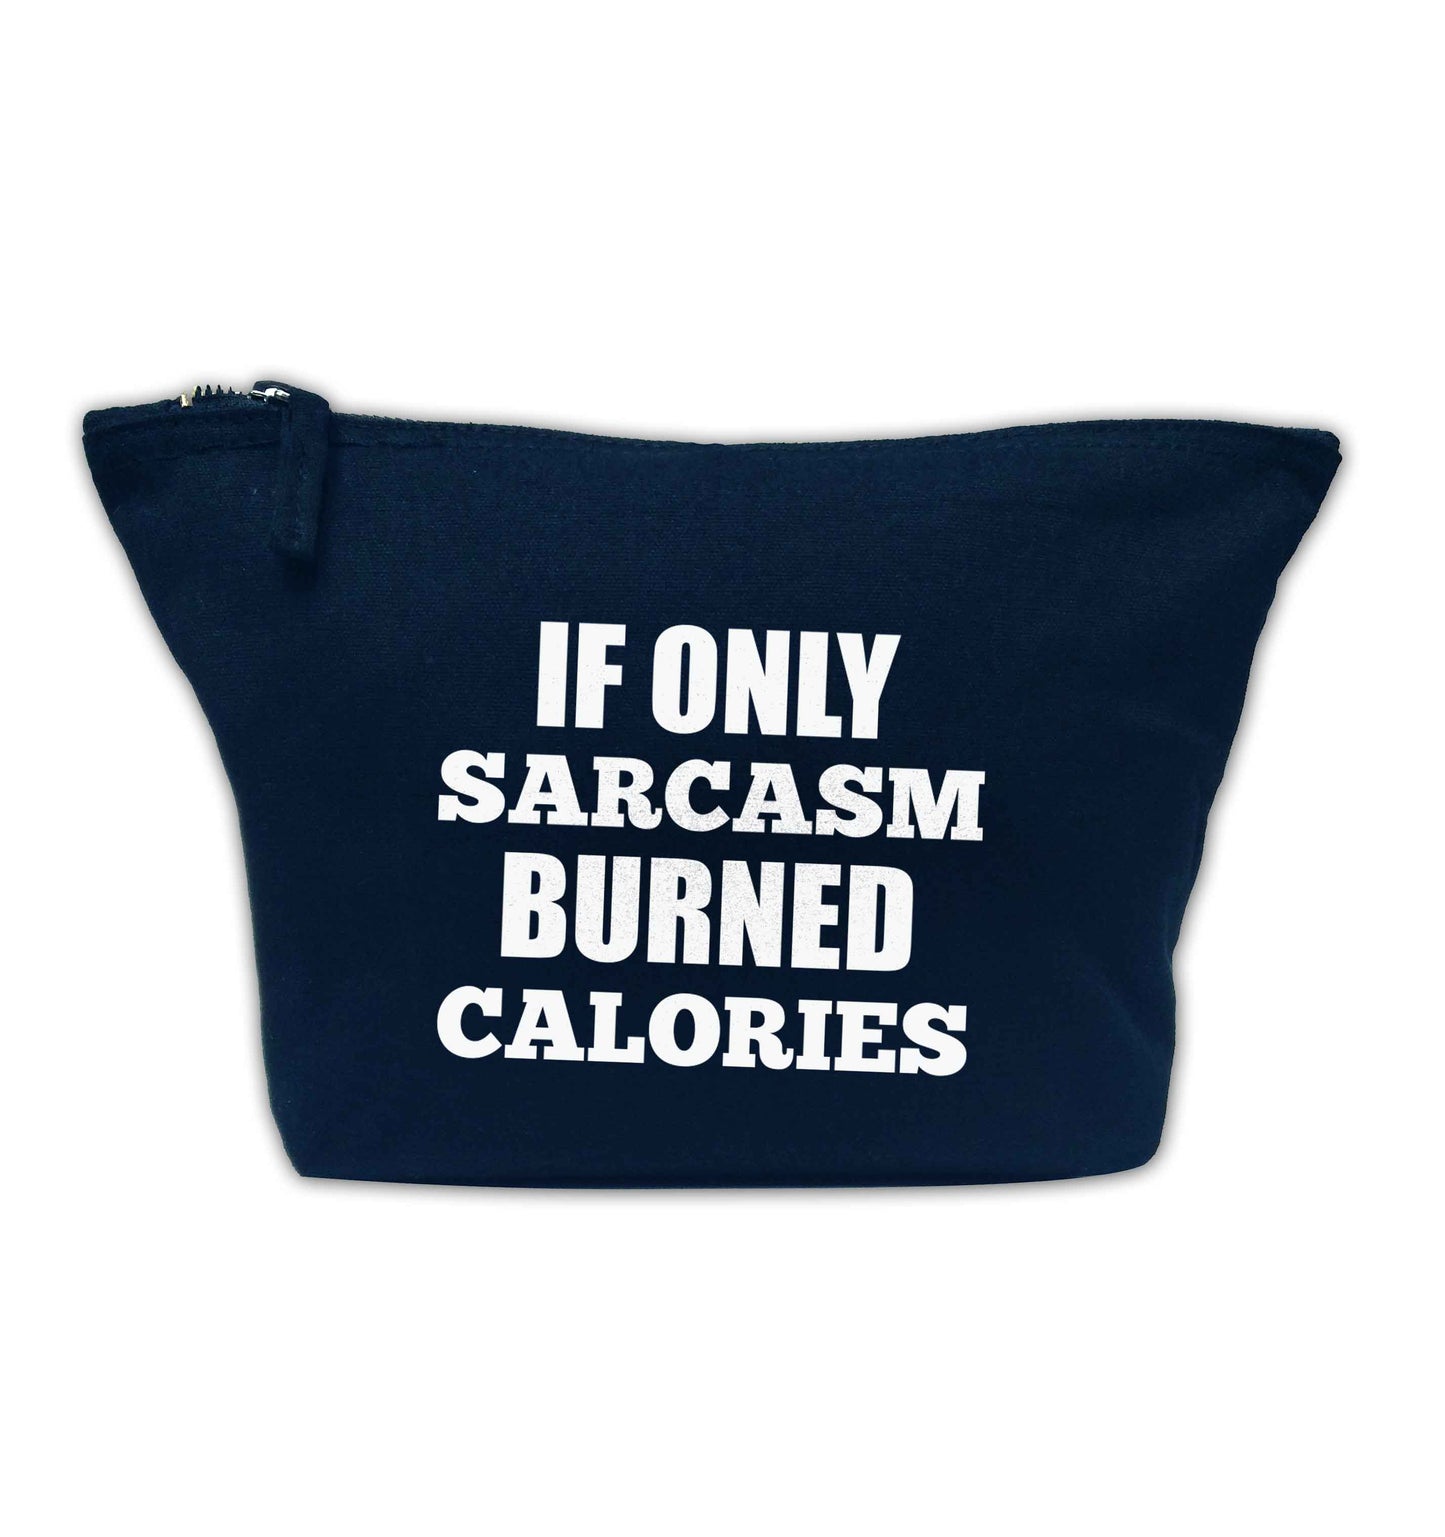 If only sarcasm burned calories navy makeup bag